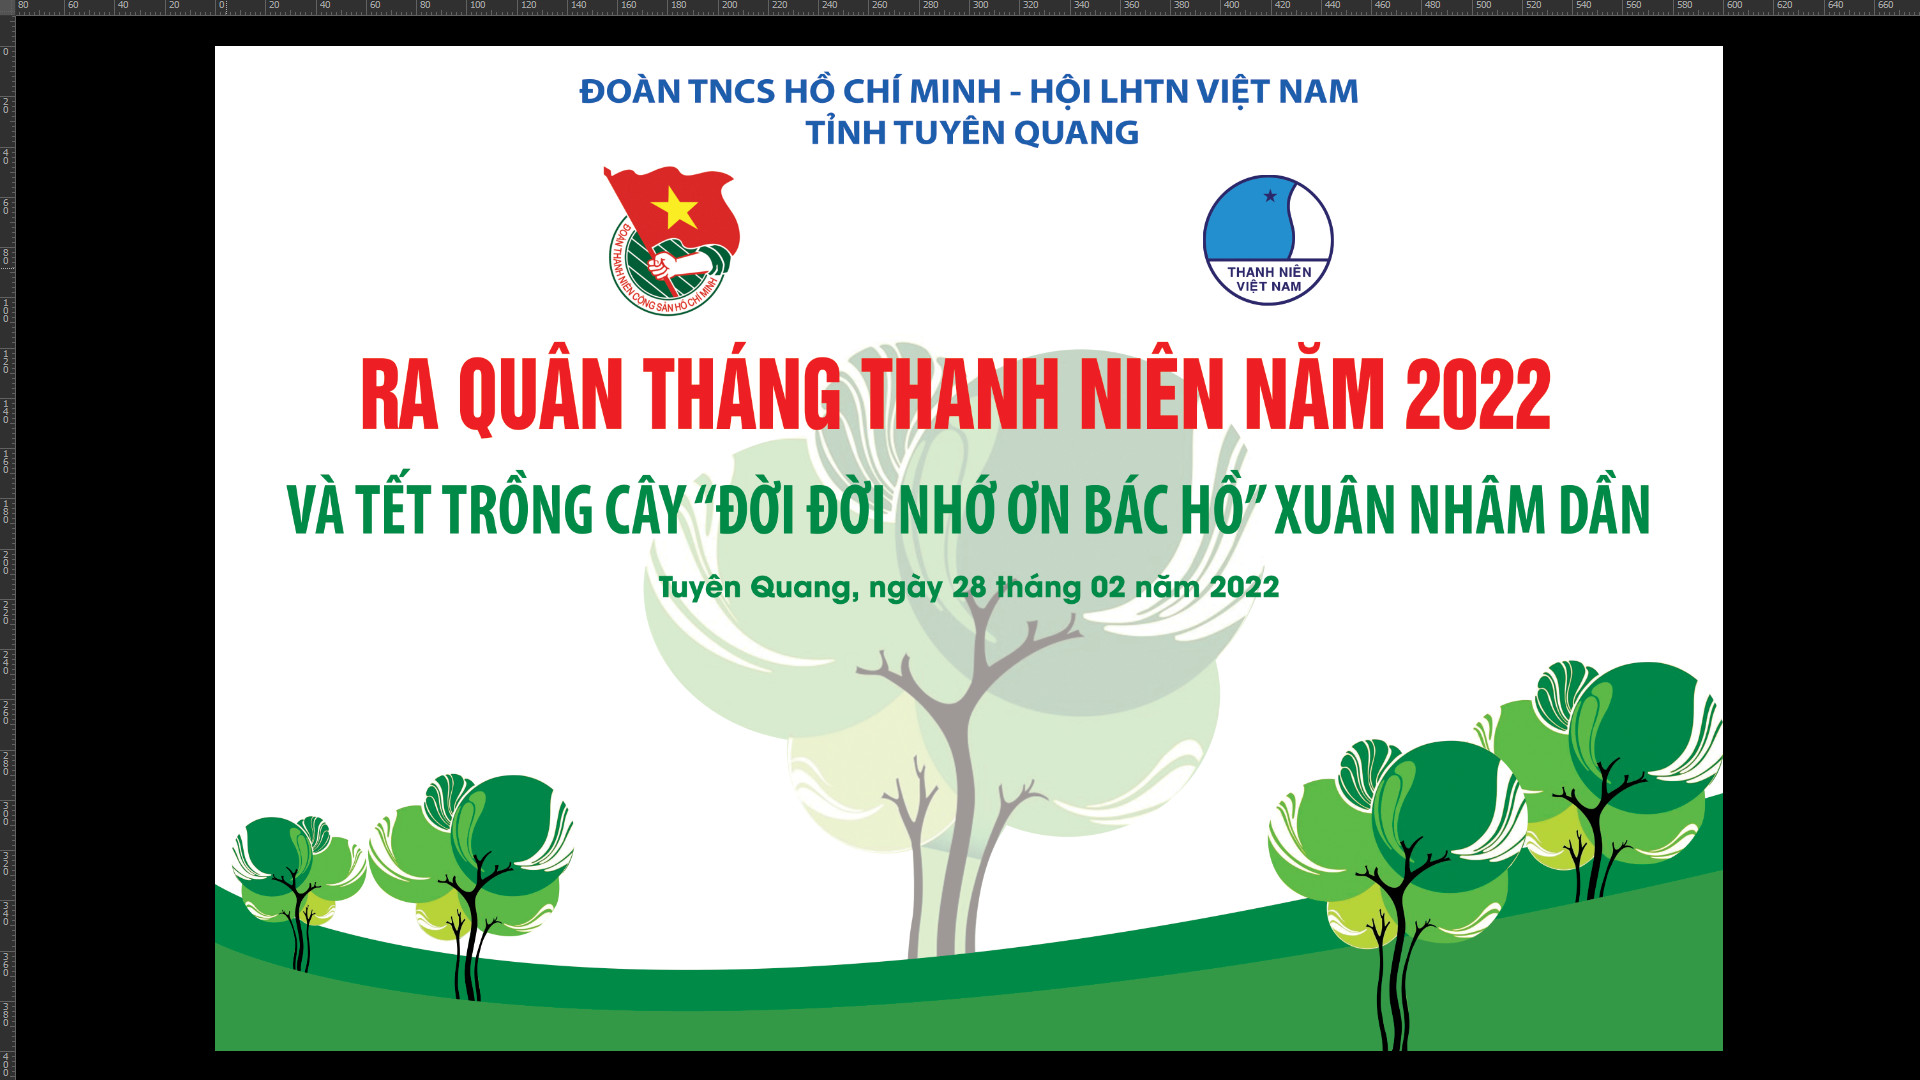 Cây Đào do đồng chí Nguyễn Mạnh Cường – Phó Chủ tịch thường trực Ủy ban Hội LHTN Việt Nam tỉnh Tuyên Quang trồng ngày 28/02/2022, tại Làng TN lập nghiệp Bình An (Chương trình Ra Quân Tháng Thanh niên năm 2022)